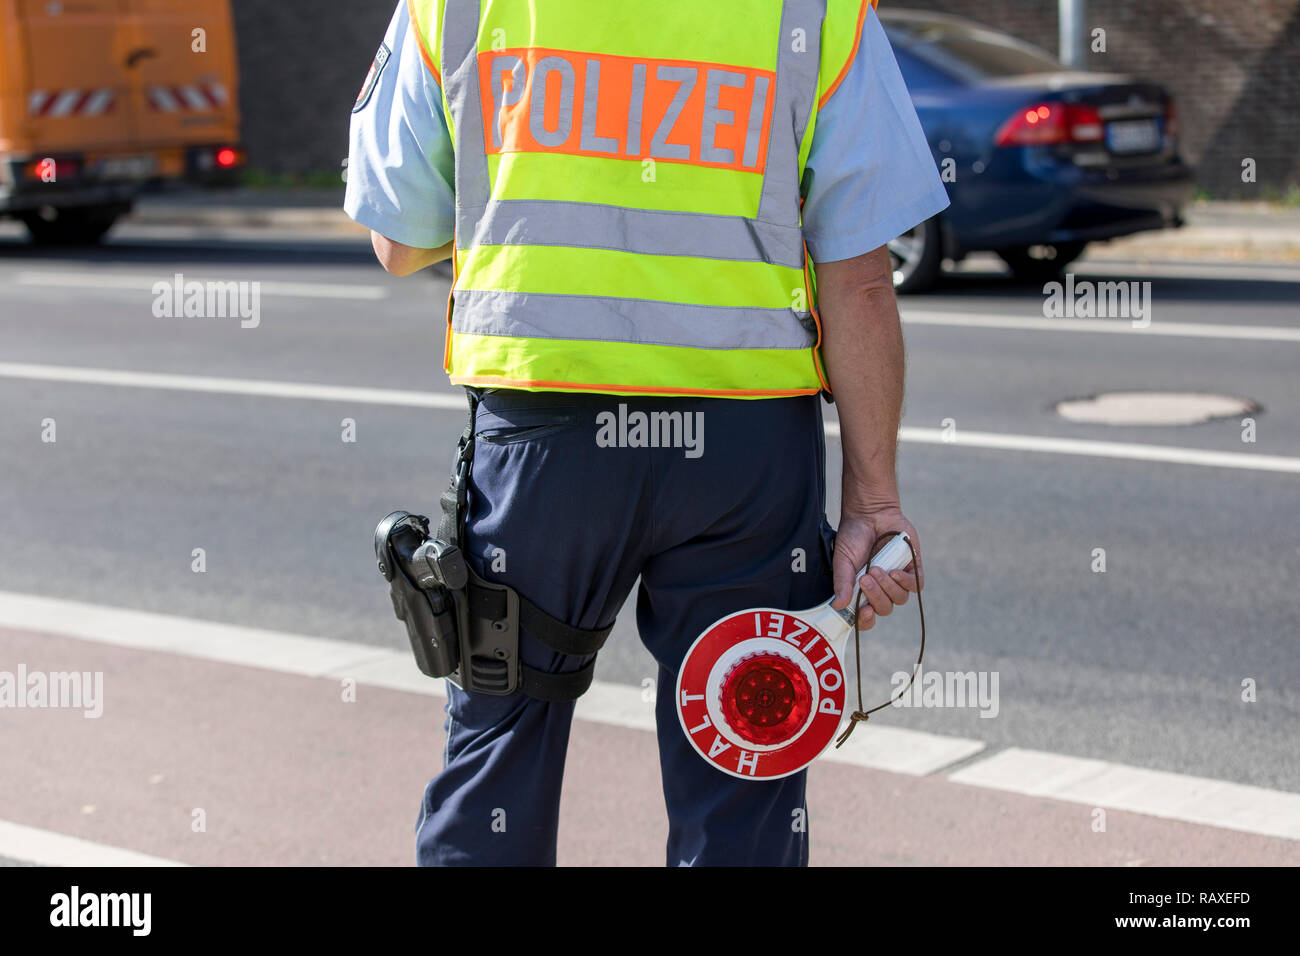 Policía con chaleco amarillo y detener llana, durante un control de  tráfico, Alemania Fotografía de stock - Alamy